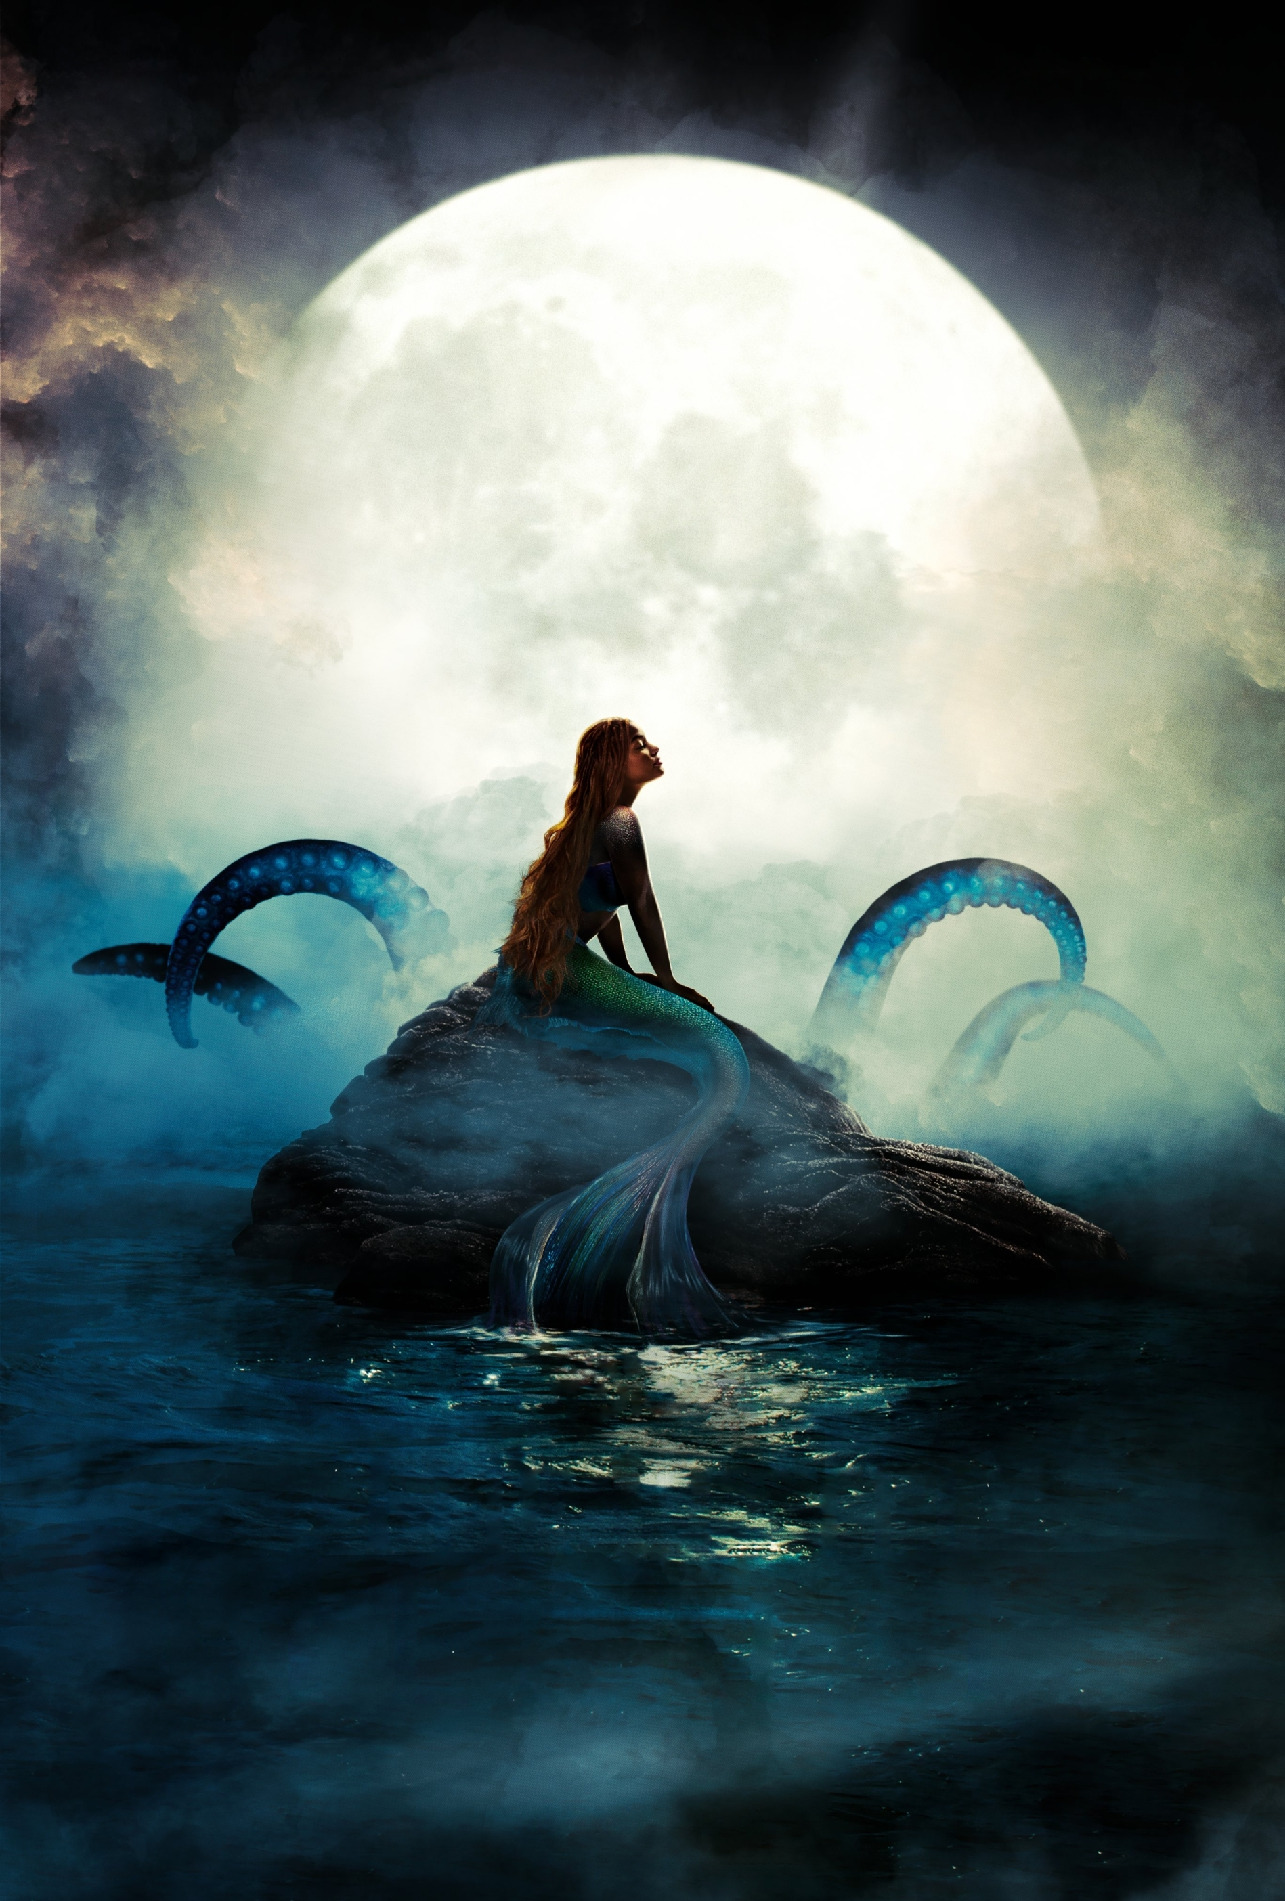 نقد فیلم The Little Mermaid – نوستالژی کودکی